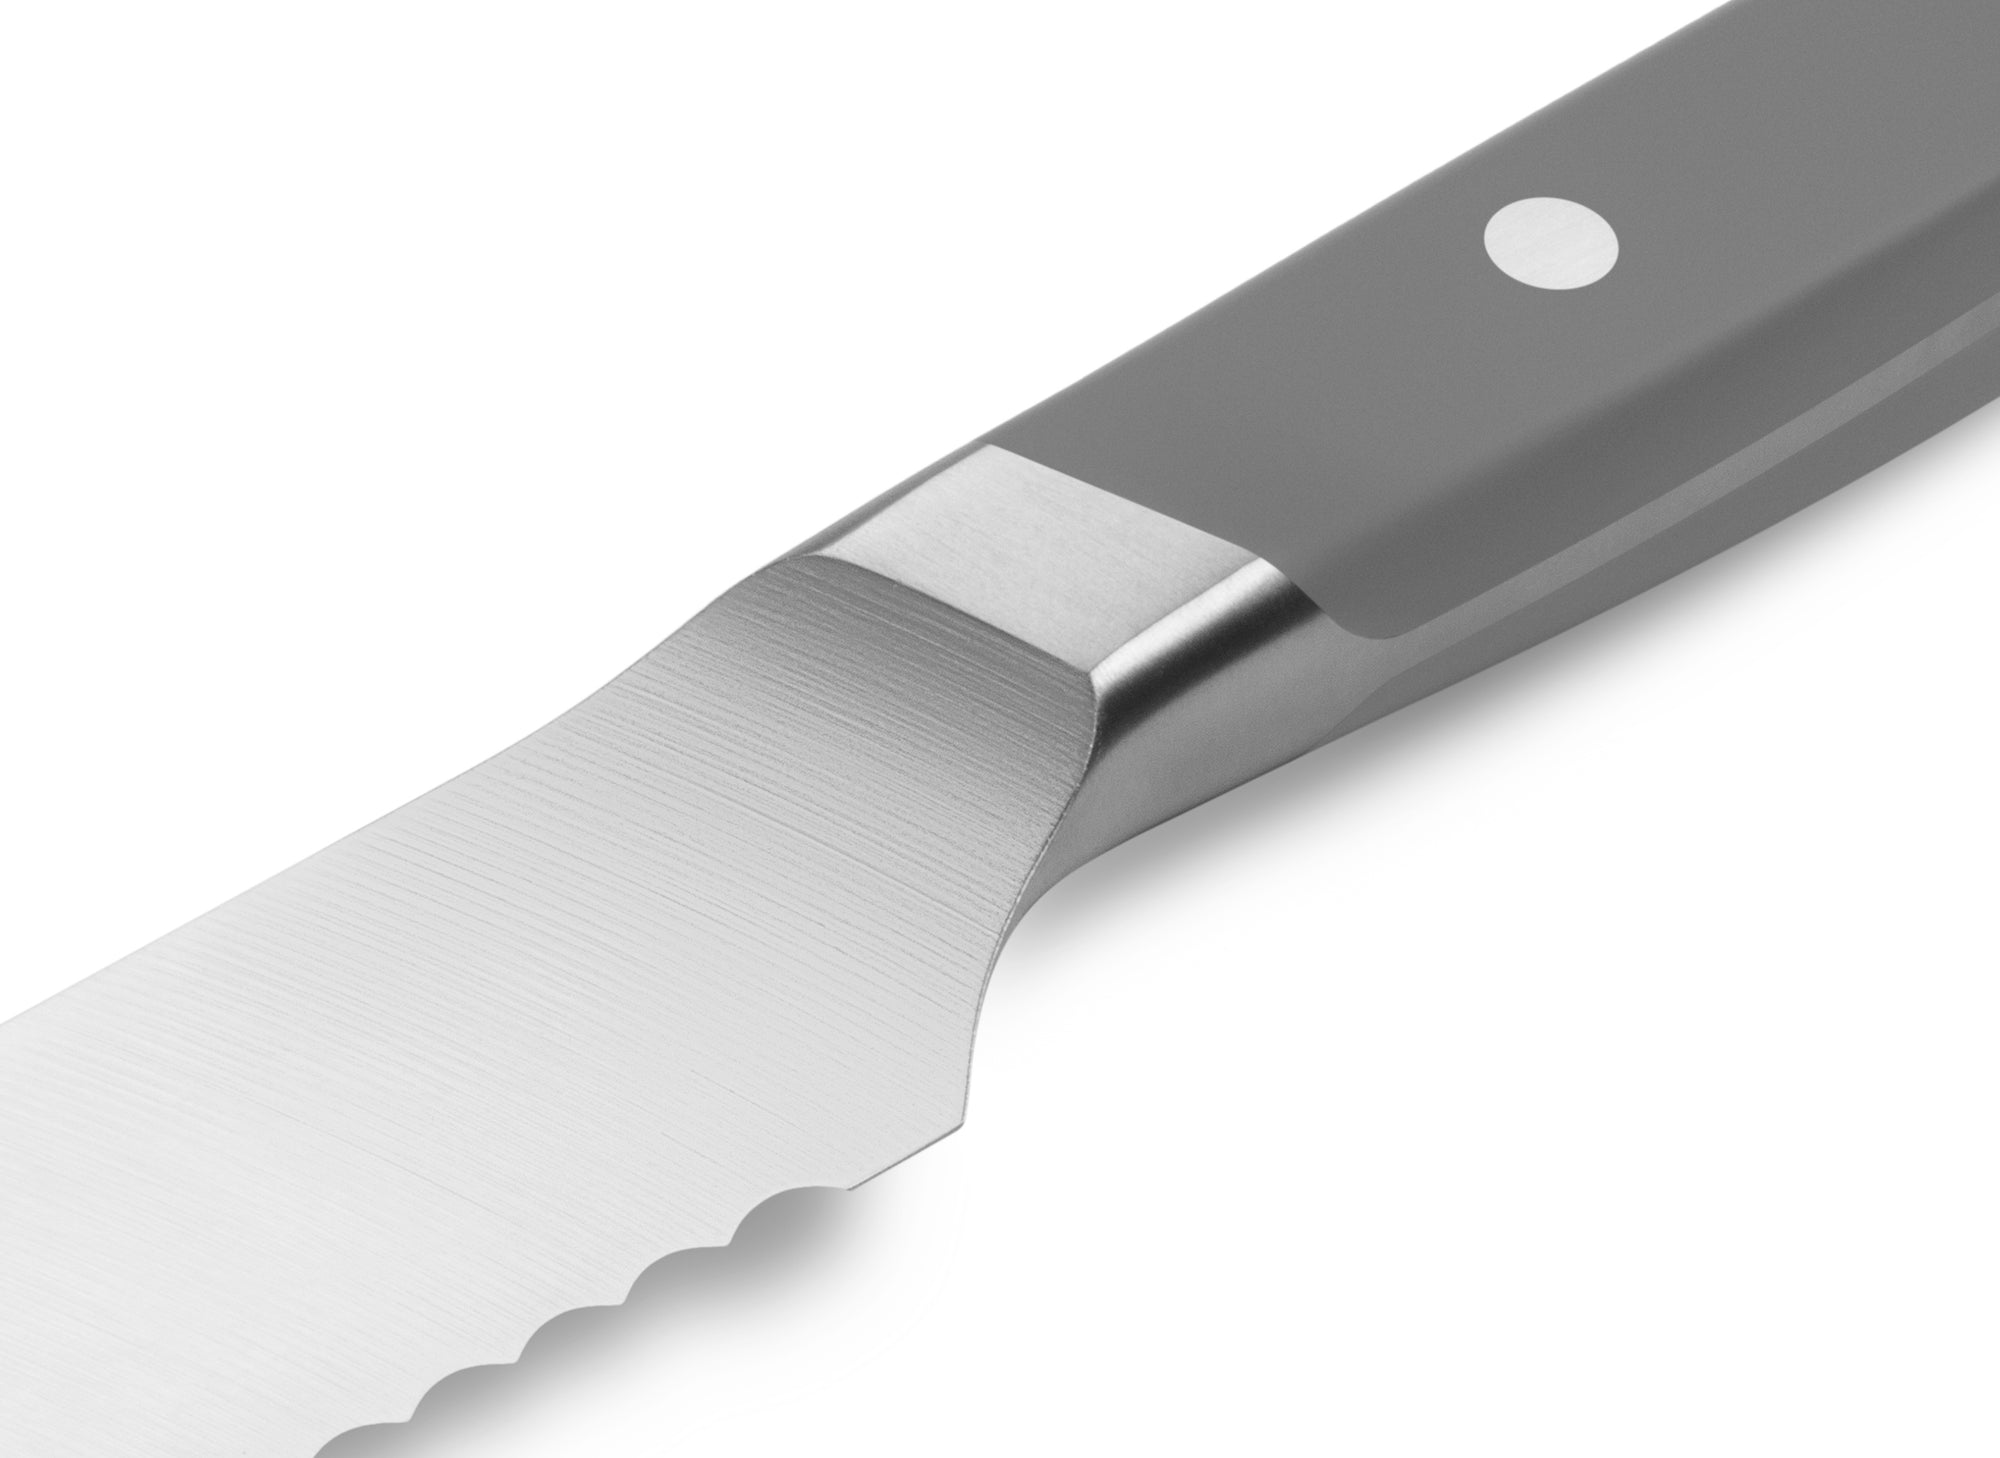 Misen 10 Serrated Knife